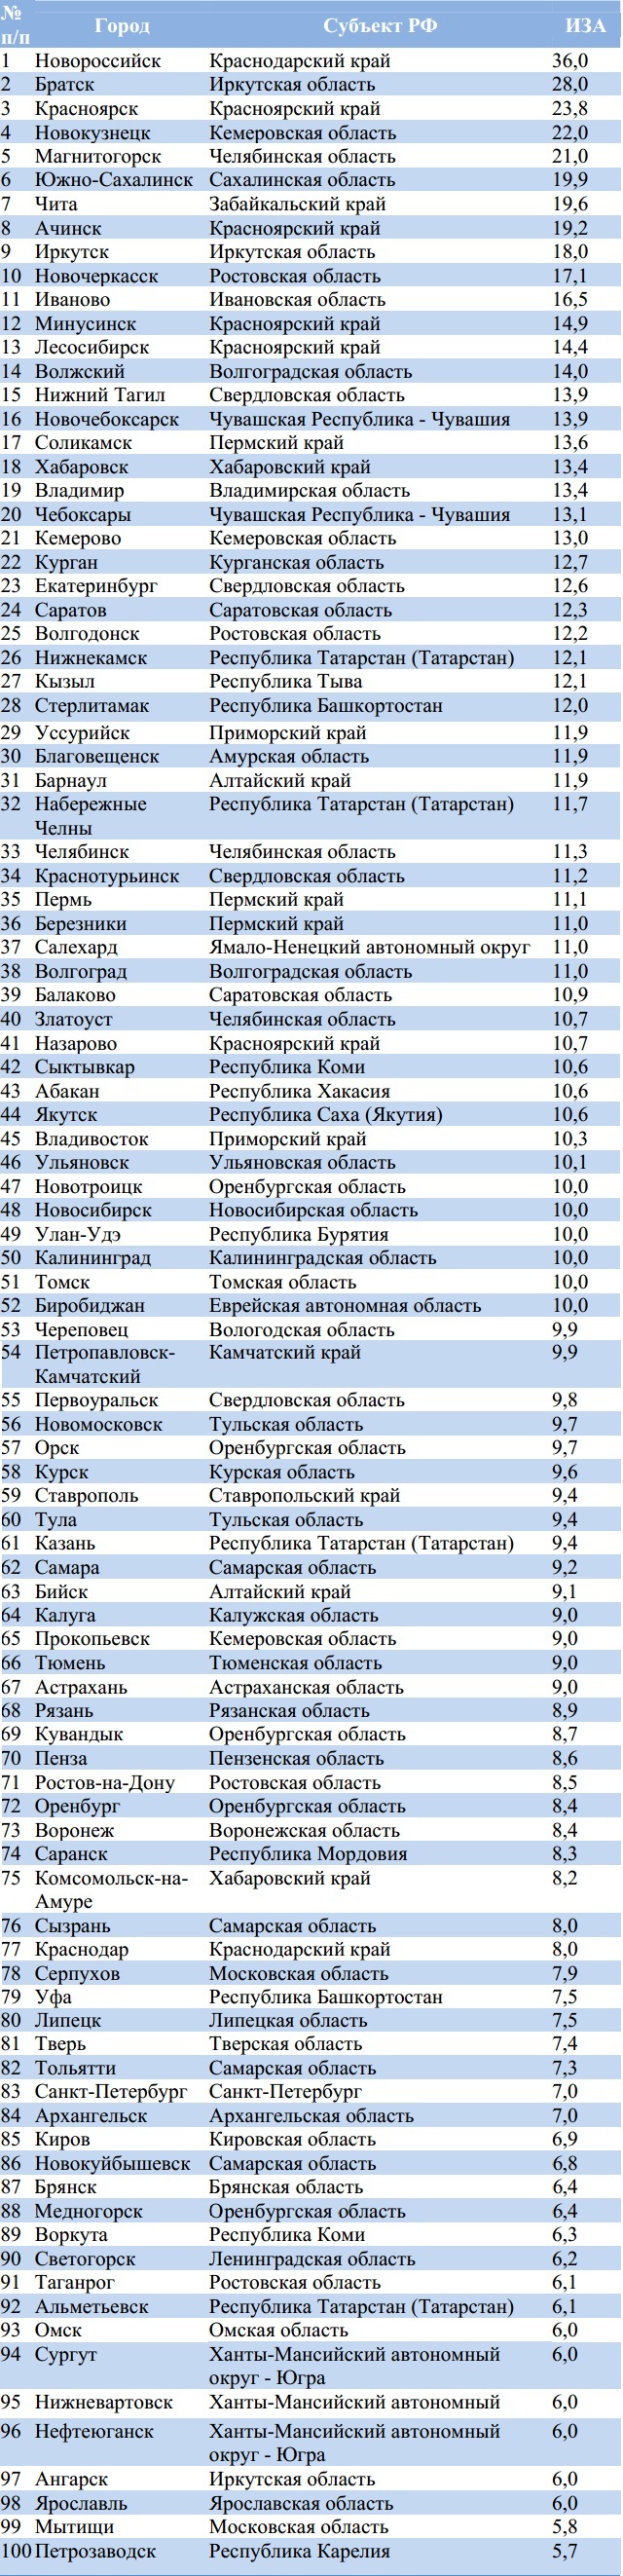 Рейтинг городов России по экологии на 01.01.2012